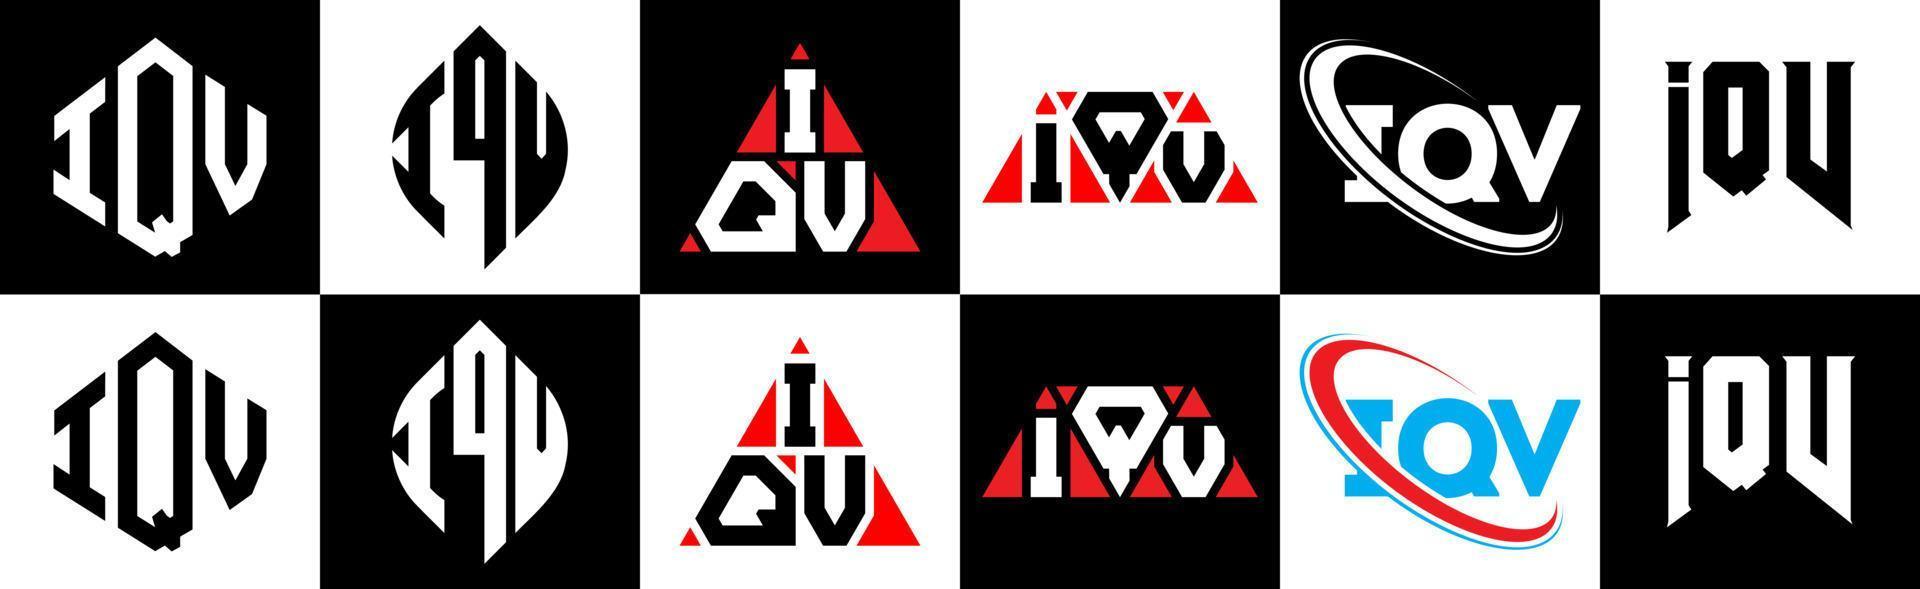 iqv brief logo ontwerp in zes stijl. iqv veelhoek, cirkel, driehoek, zeshoek, vlak en gemakkelijk stijl met zwart en wit kleur variatie brief logo reeks in een tekengebied. iqv minimalistische en klassiek logo vector